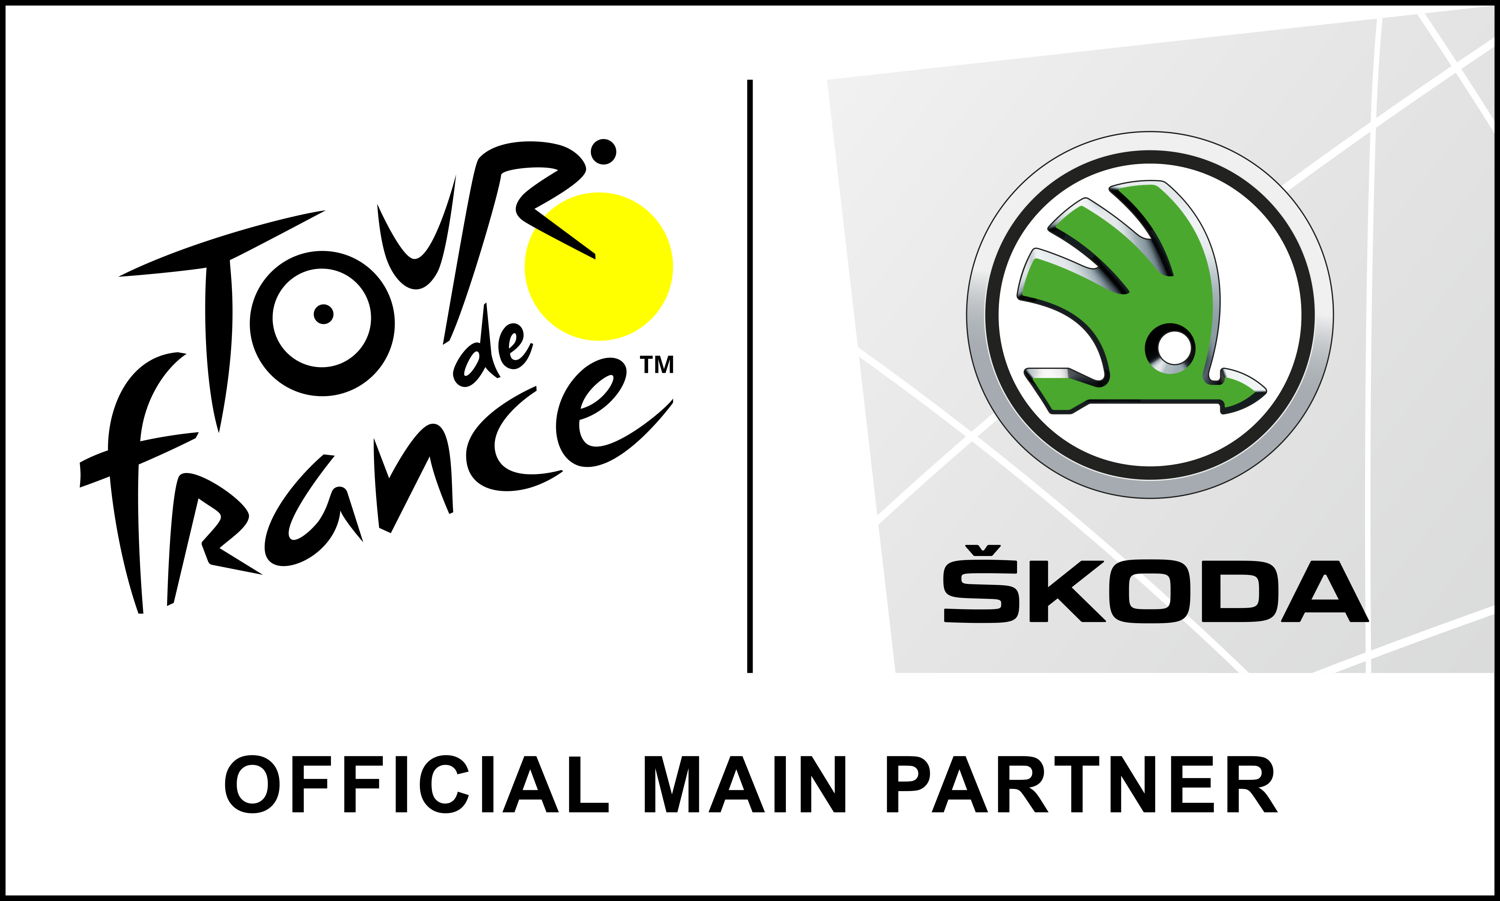 Official logo of the Tour de France.